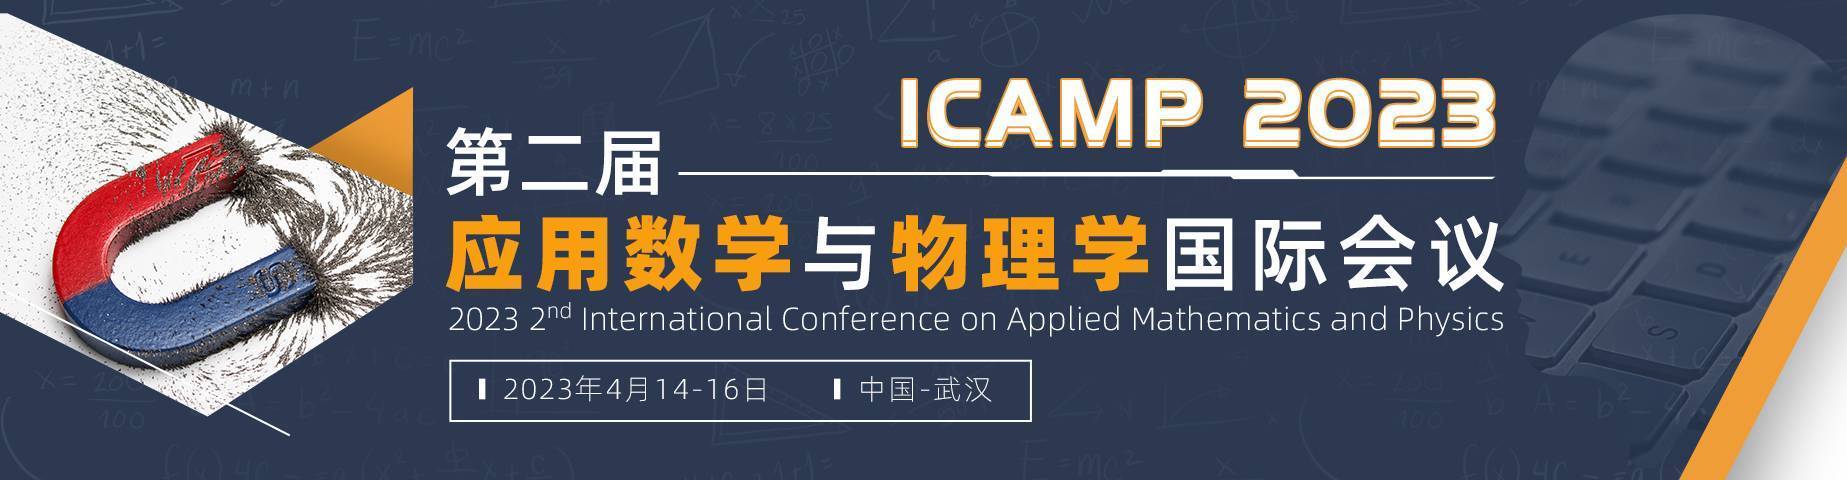 第二届应用数学与物理学国际会议(ICAMP 2023)